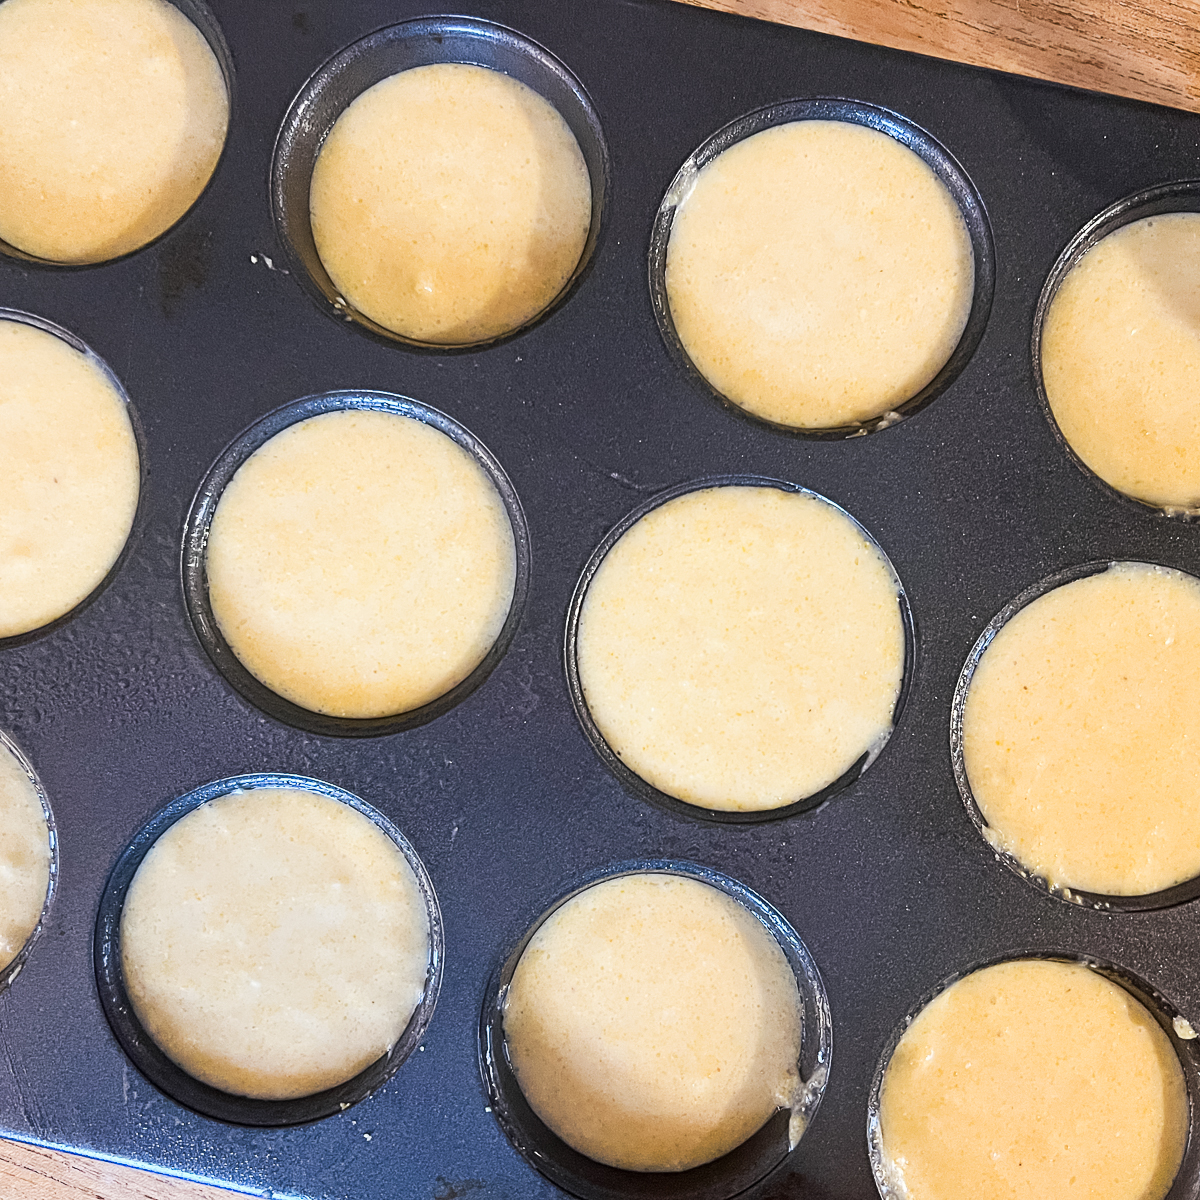 Cracker Barrel Cornbread Muffins Copycat Recipe - Step 4 - put cornbread batter in muffin tins before putting in oven